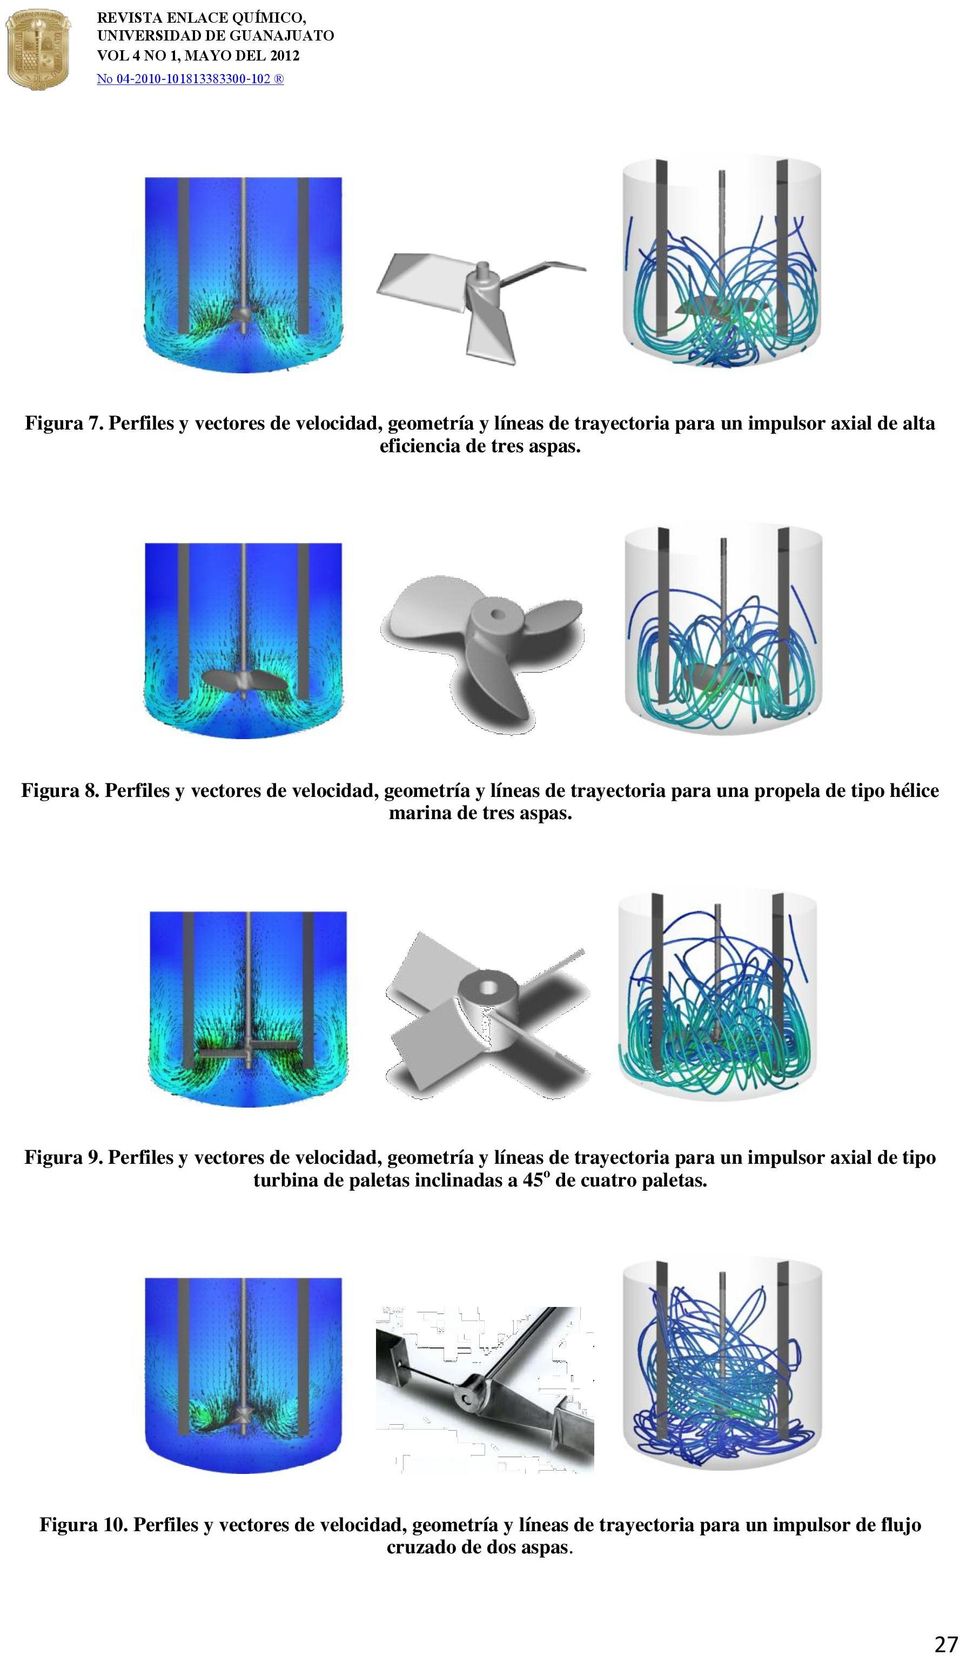 Perfiles y vectores de velocidad, geometría y líneas de trayectoria para un impulsor axial de tipo turbina de paletas inclinadas a 45 o de